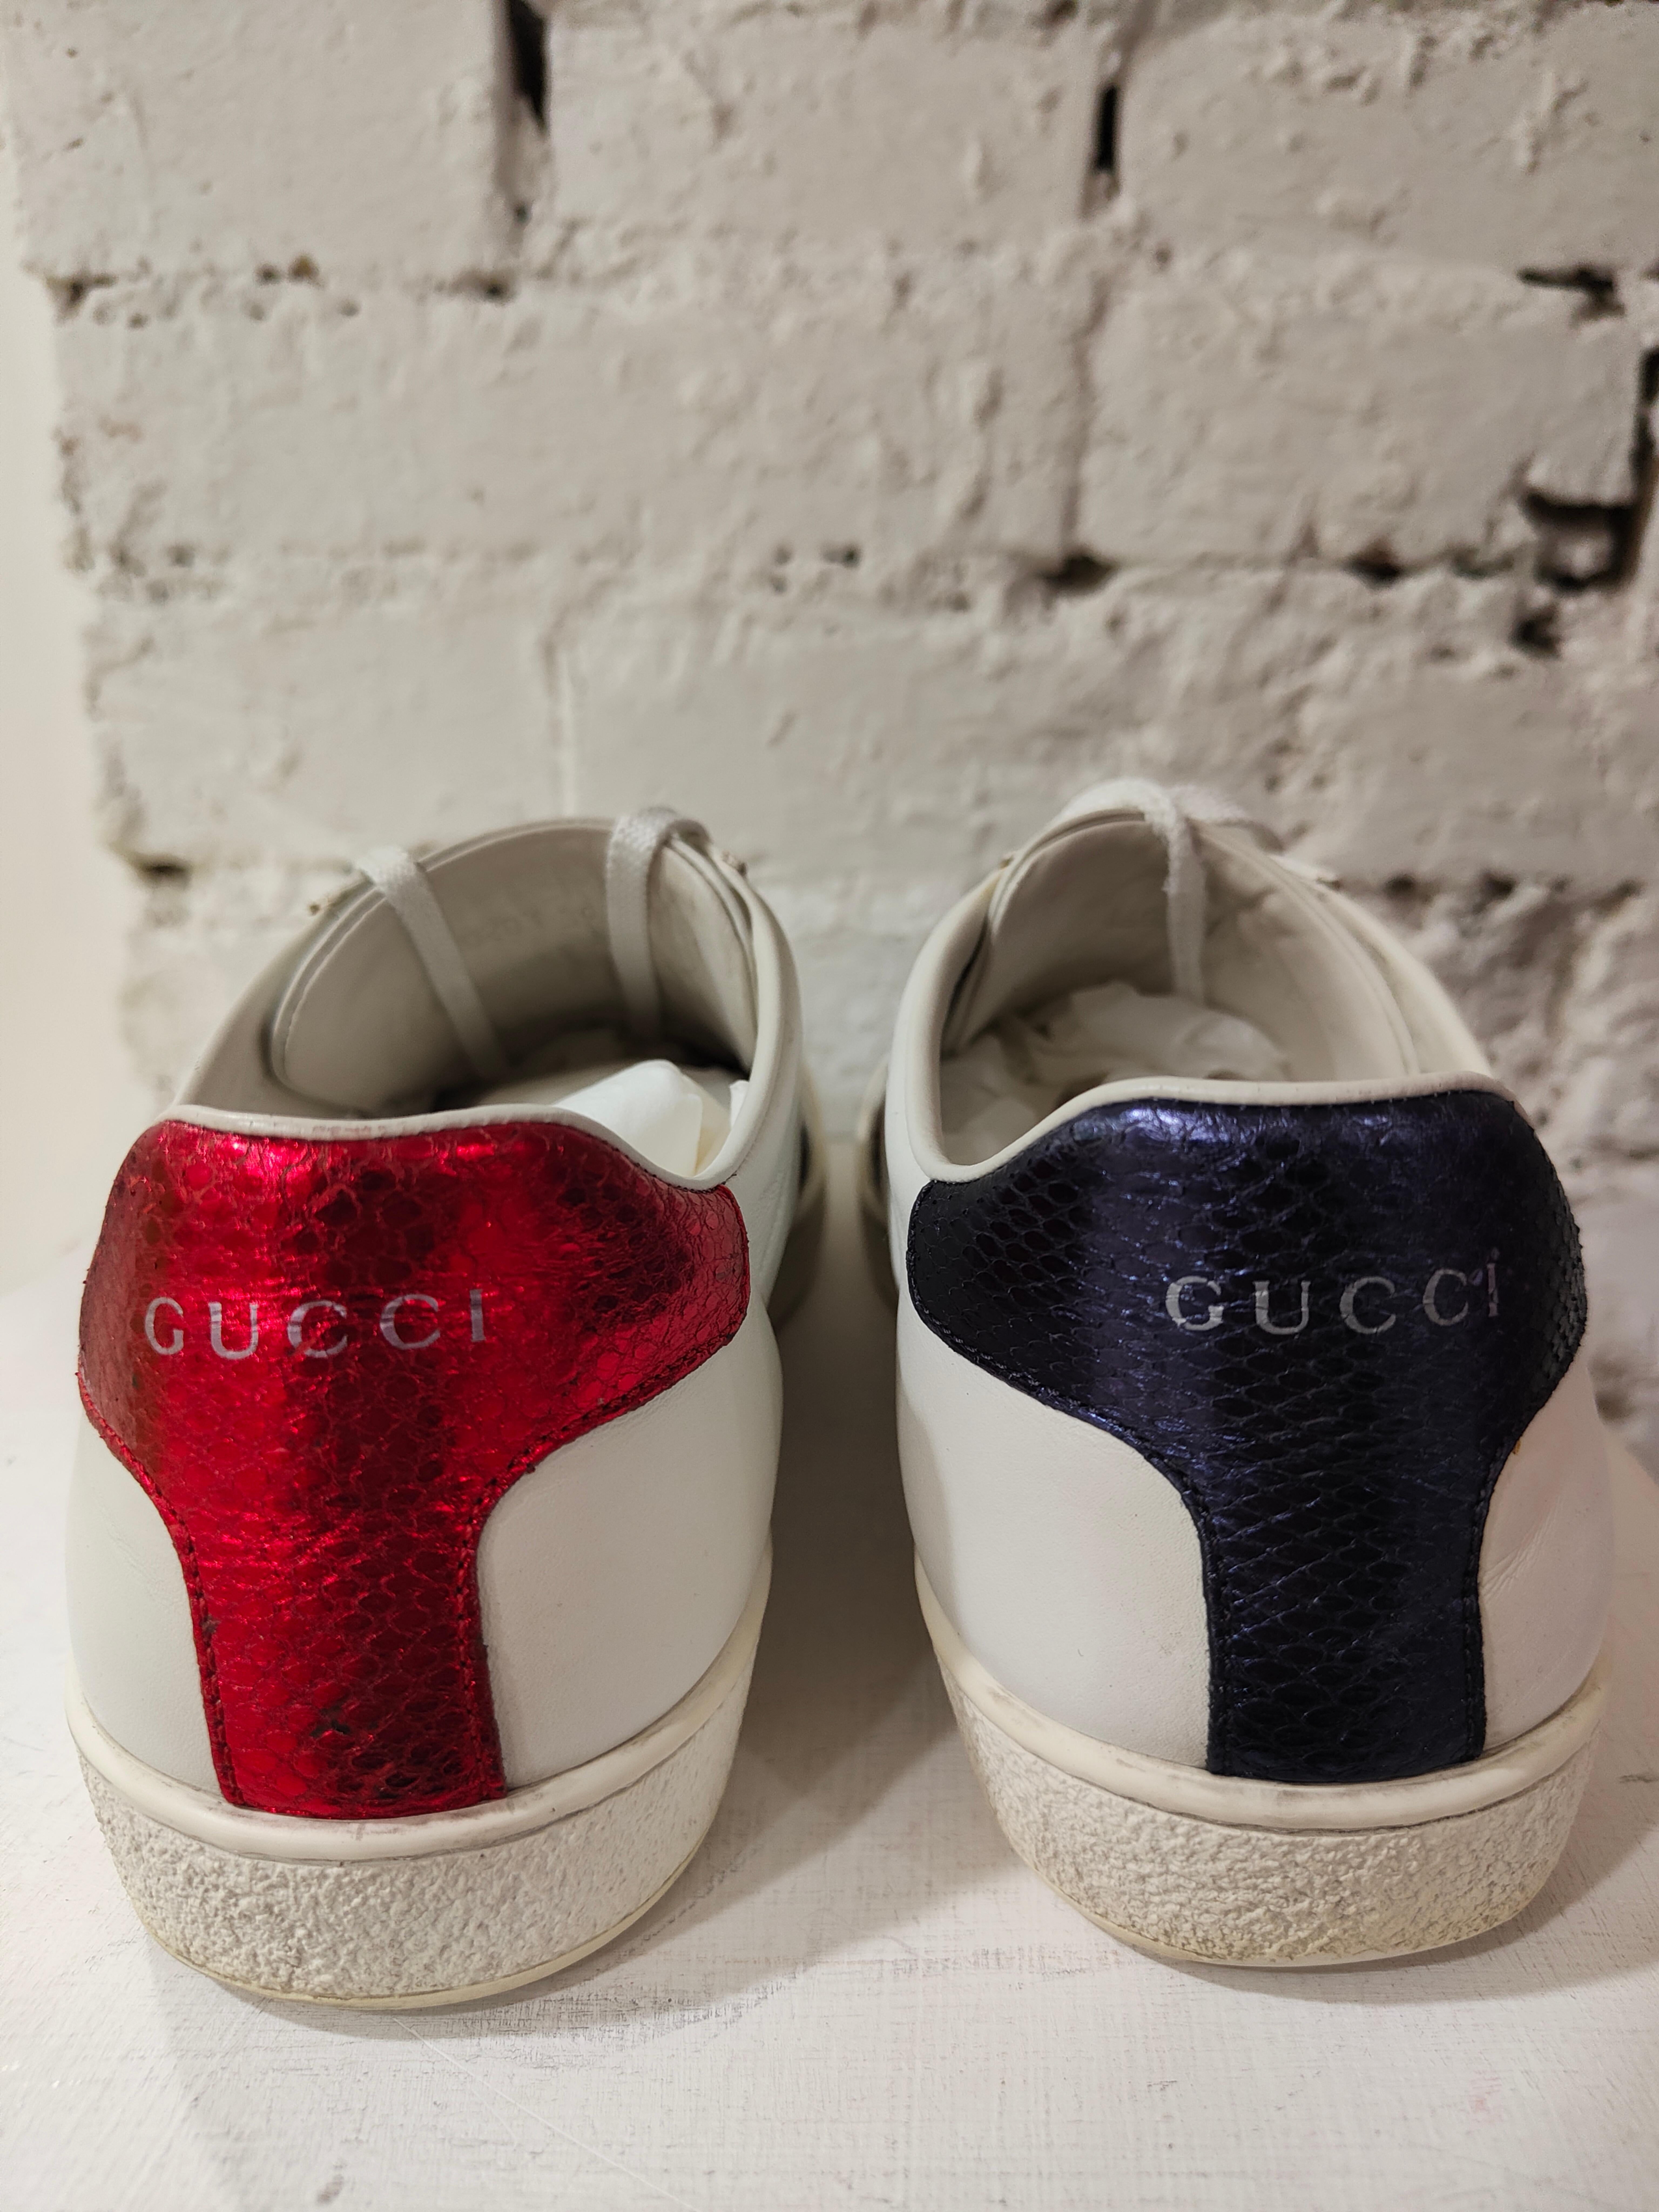 Gucci Turnschuhe aus weißem Leder mit roten und blauen Mustern 
Schlangen mit Swarovski-Steinen
vollständig in Italien hergestellt
Größe 39